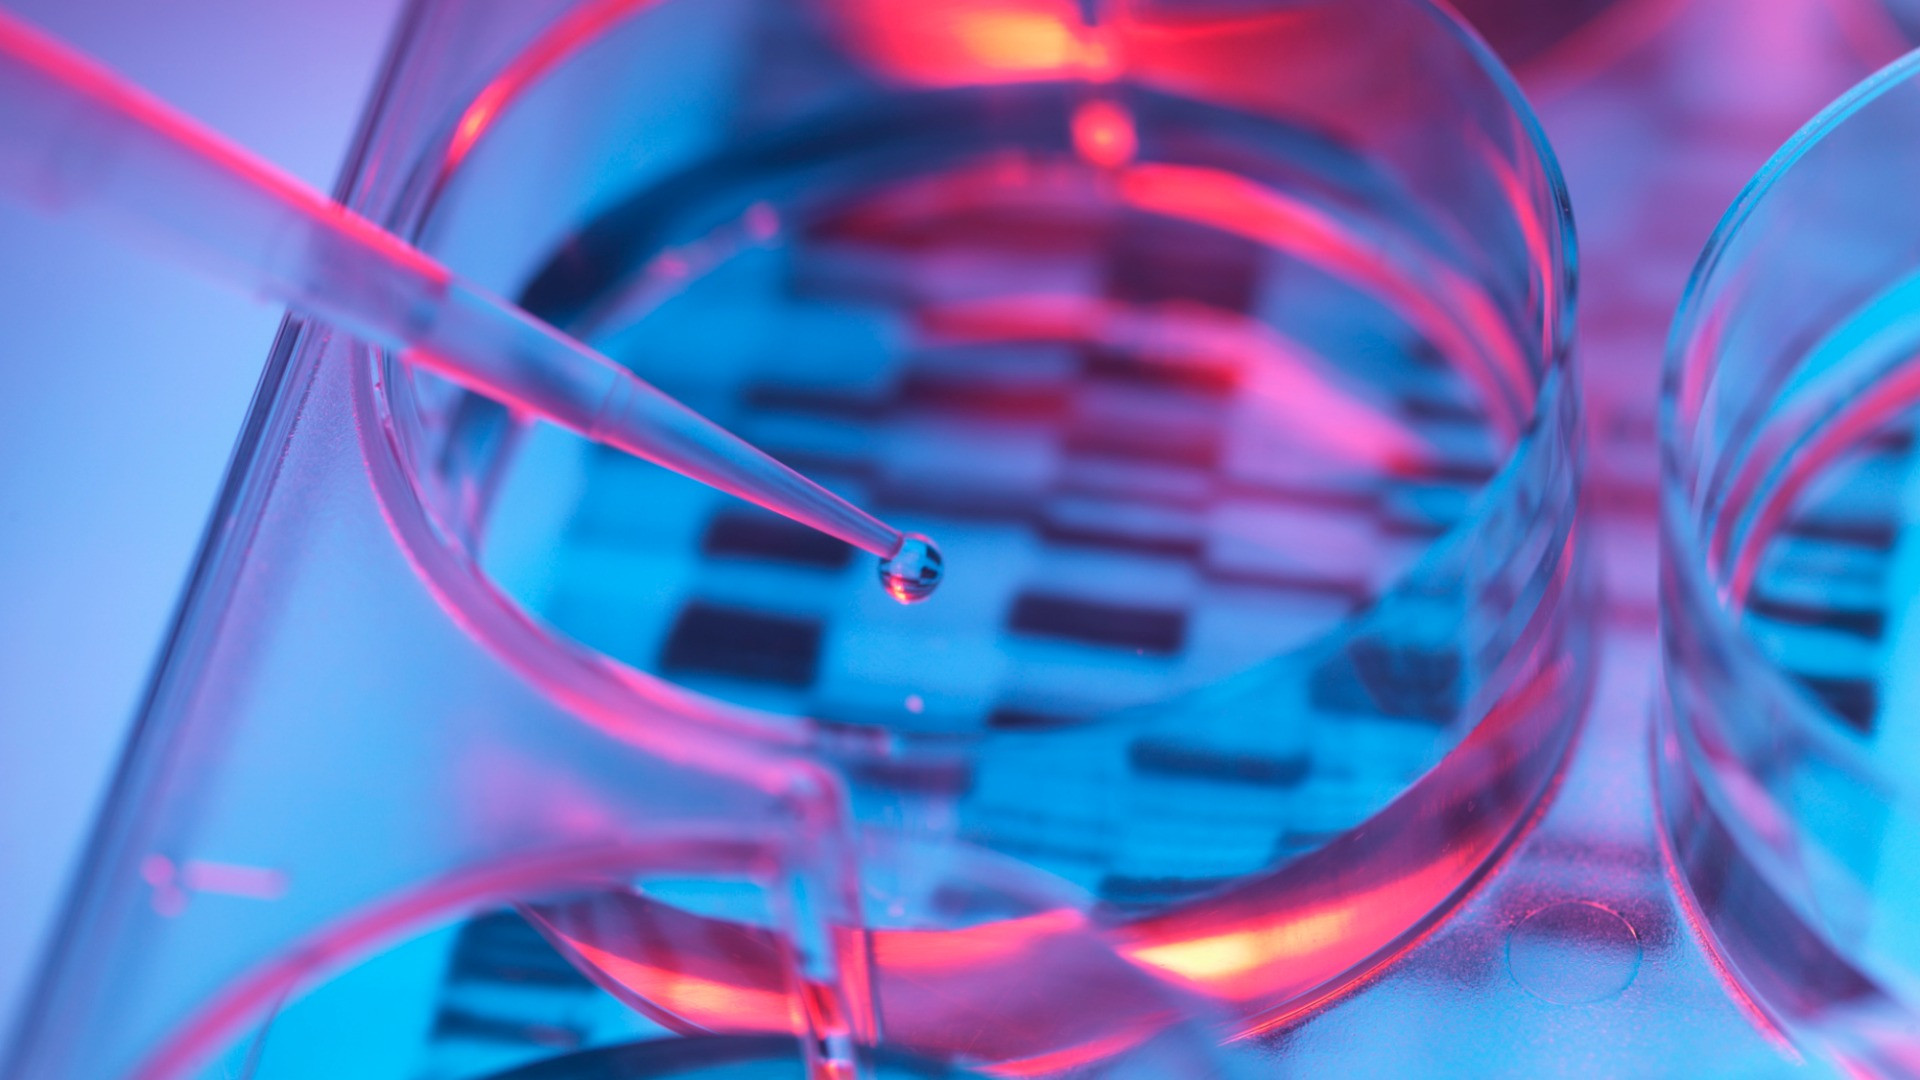 Αναπτύχθηκε ένα νέο προγεννητικό τεστ DNA για το σύνδρομο Ντάουν